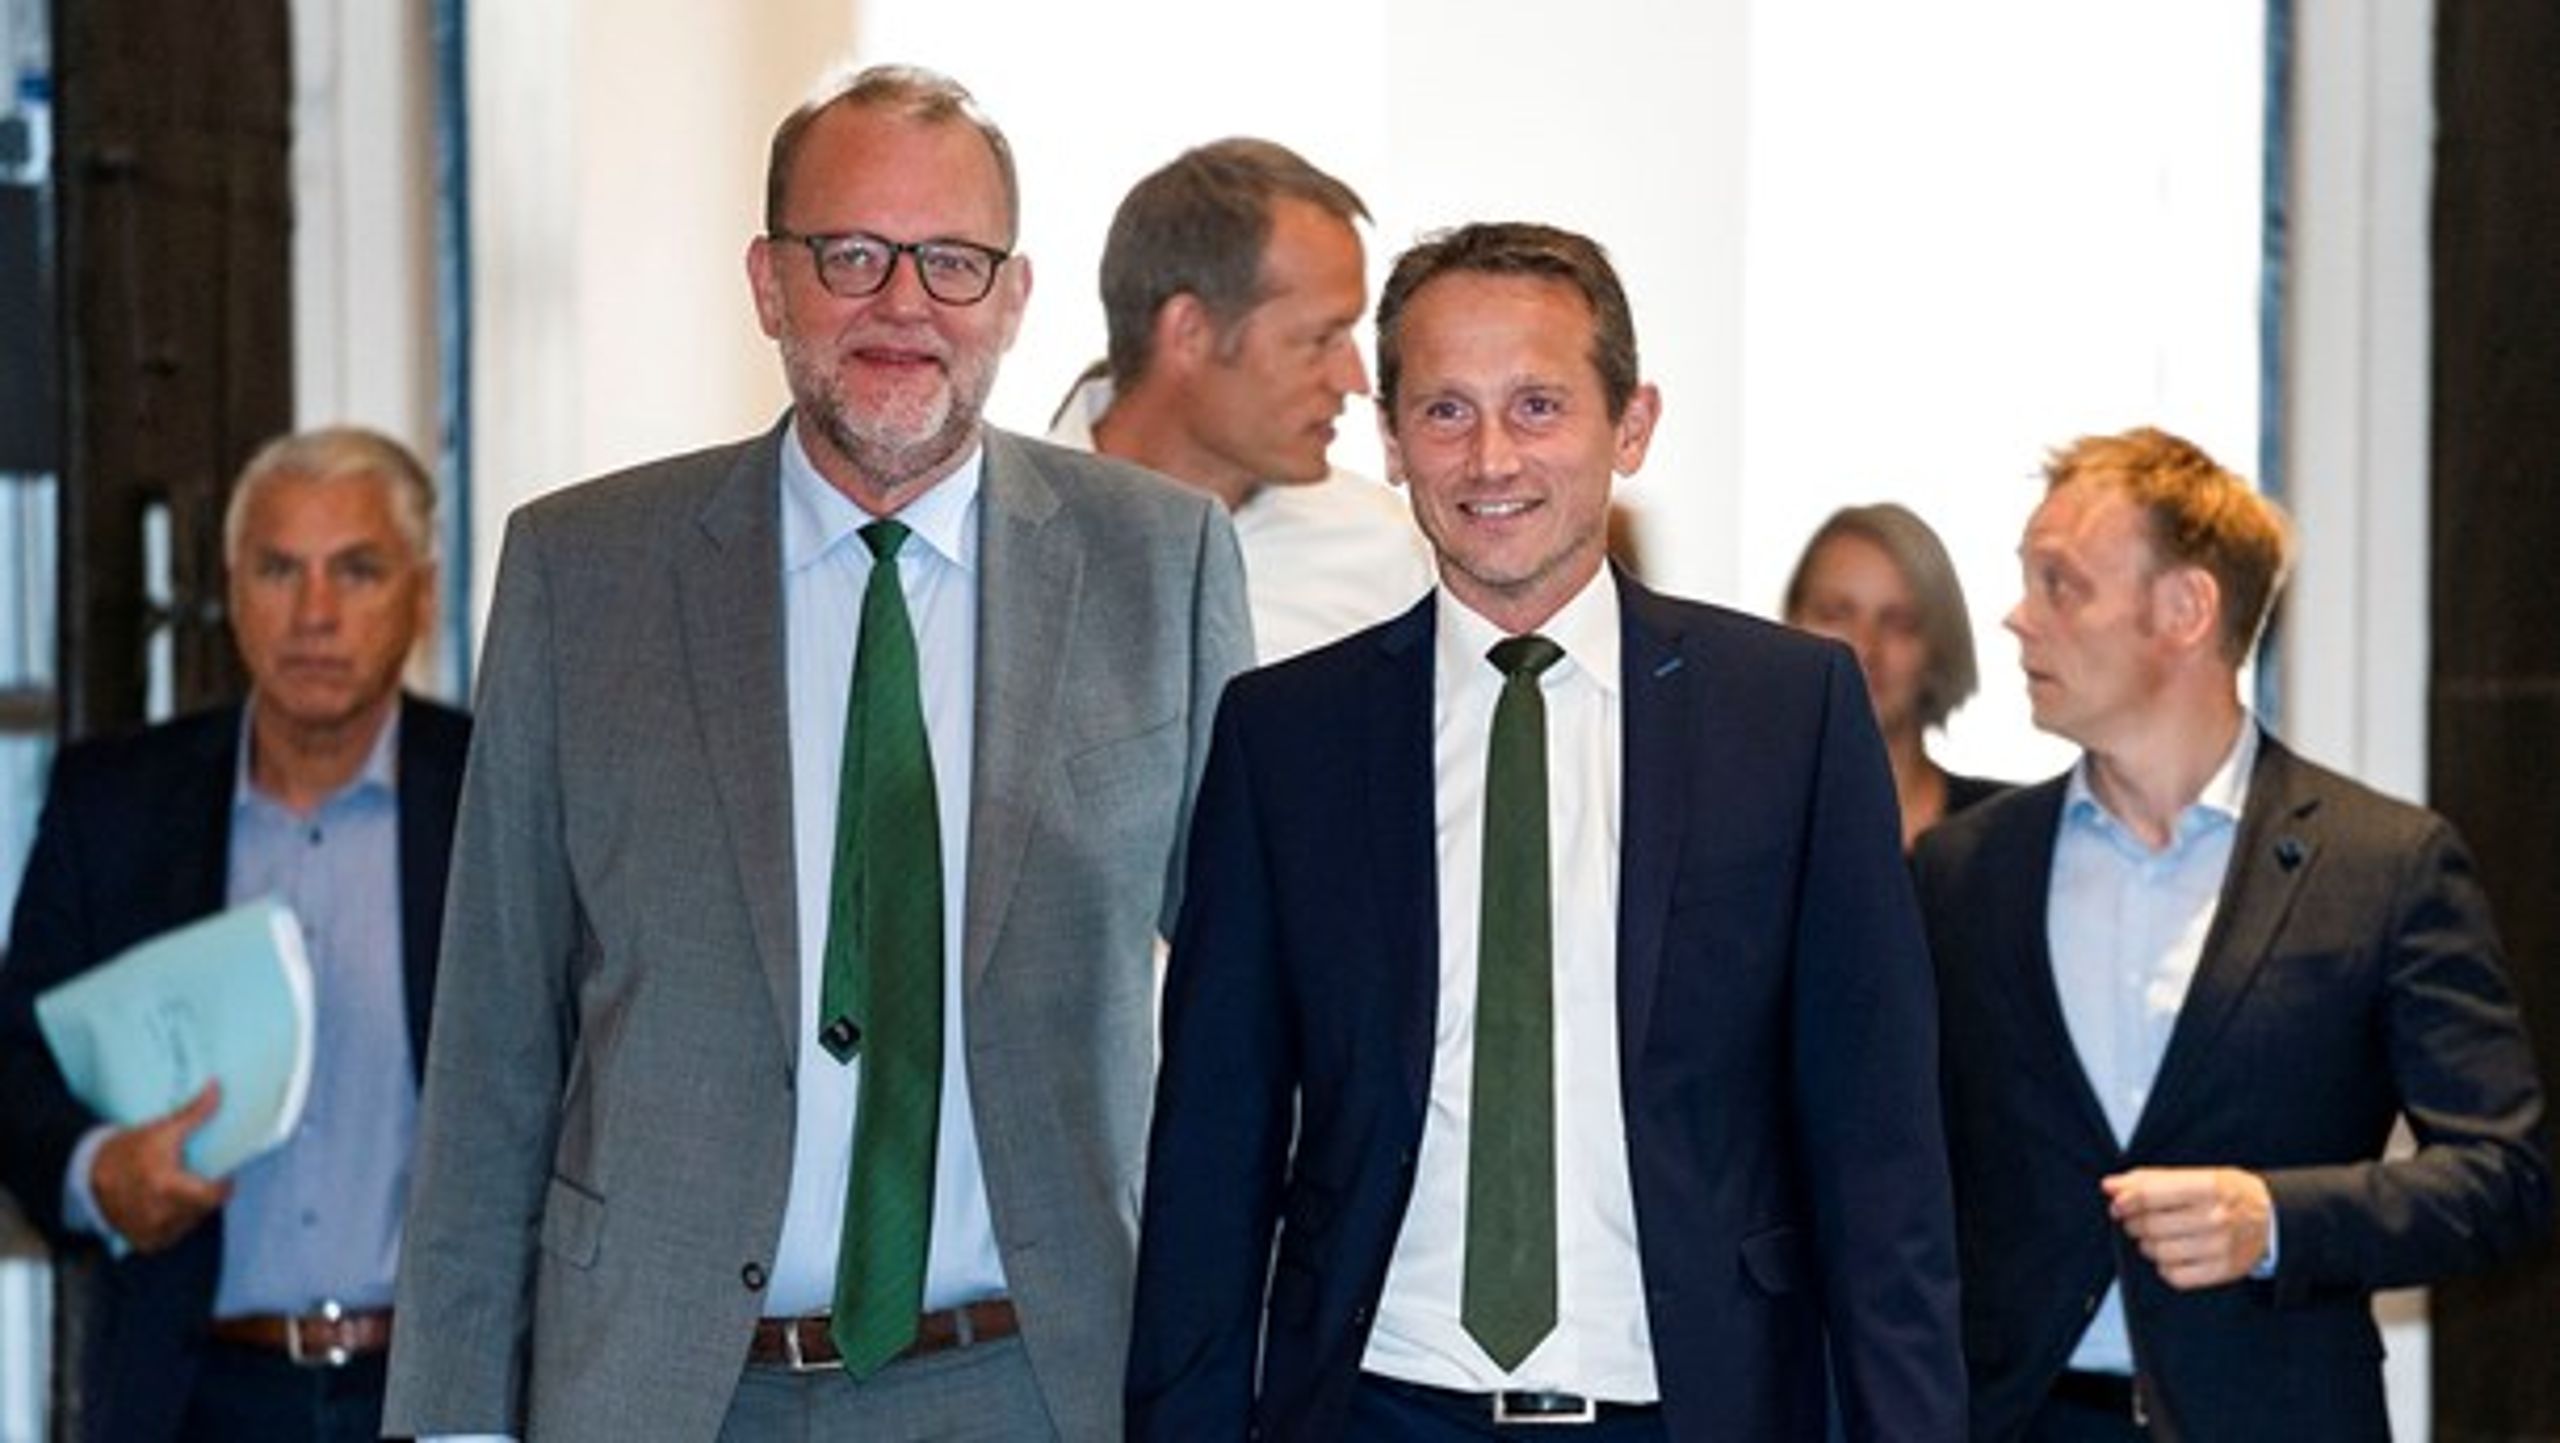 Energiminister Lars Chr. Lilleholt (V) og finansminister Kristian Jensen (V) på vej til de afsluttende forhandlinger. Det lykkedes dem at lande en energiaftale med opbakning fra hele Folketinget.